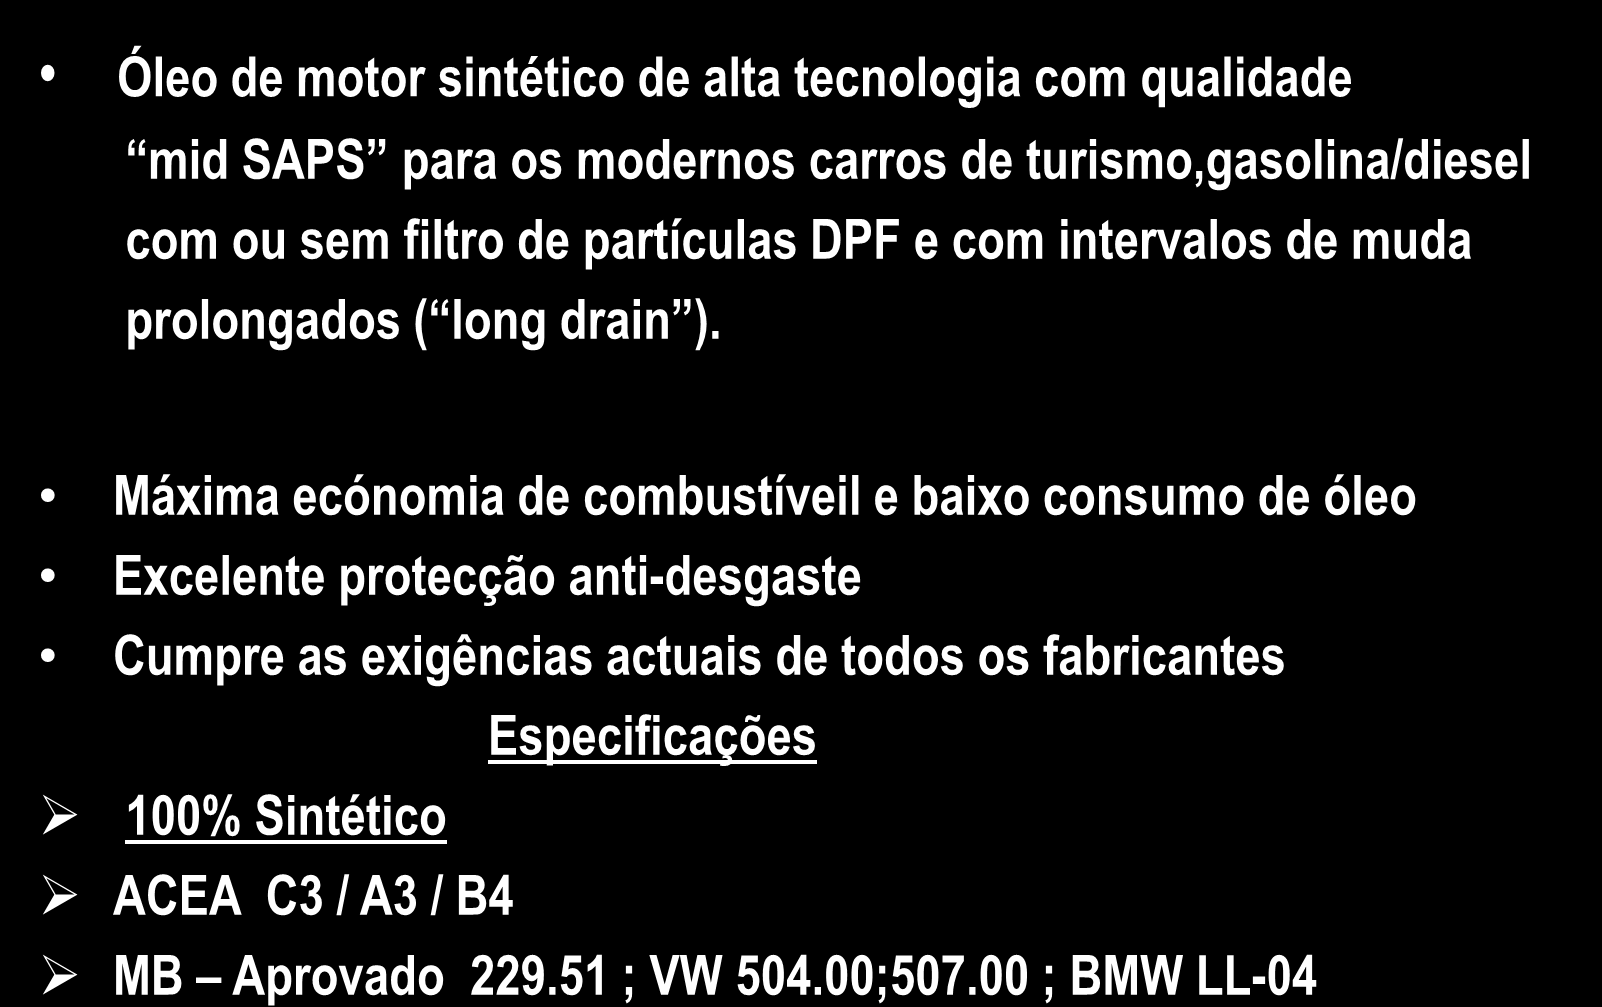 FORMULA FUTURE 5W-30 Óleo de motor sintético de alta tecnologia com qualidade mid SAPS para os modernos carros de turismo,gasolina/diesel com ou sem filtro de partículas DPF e com intervalos de muda